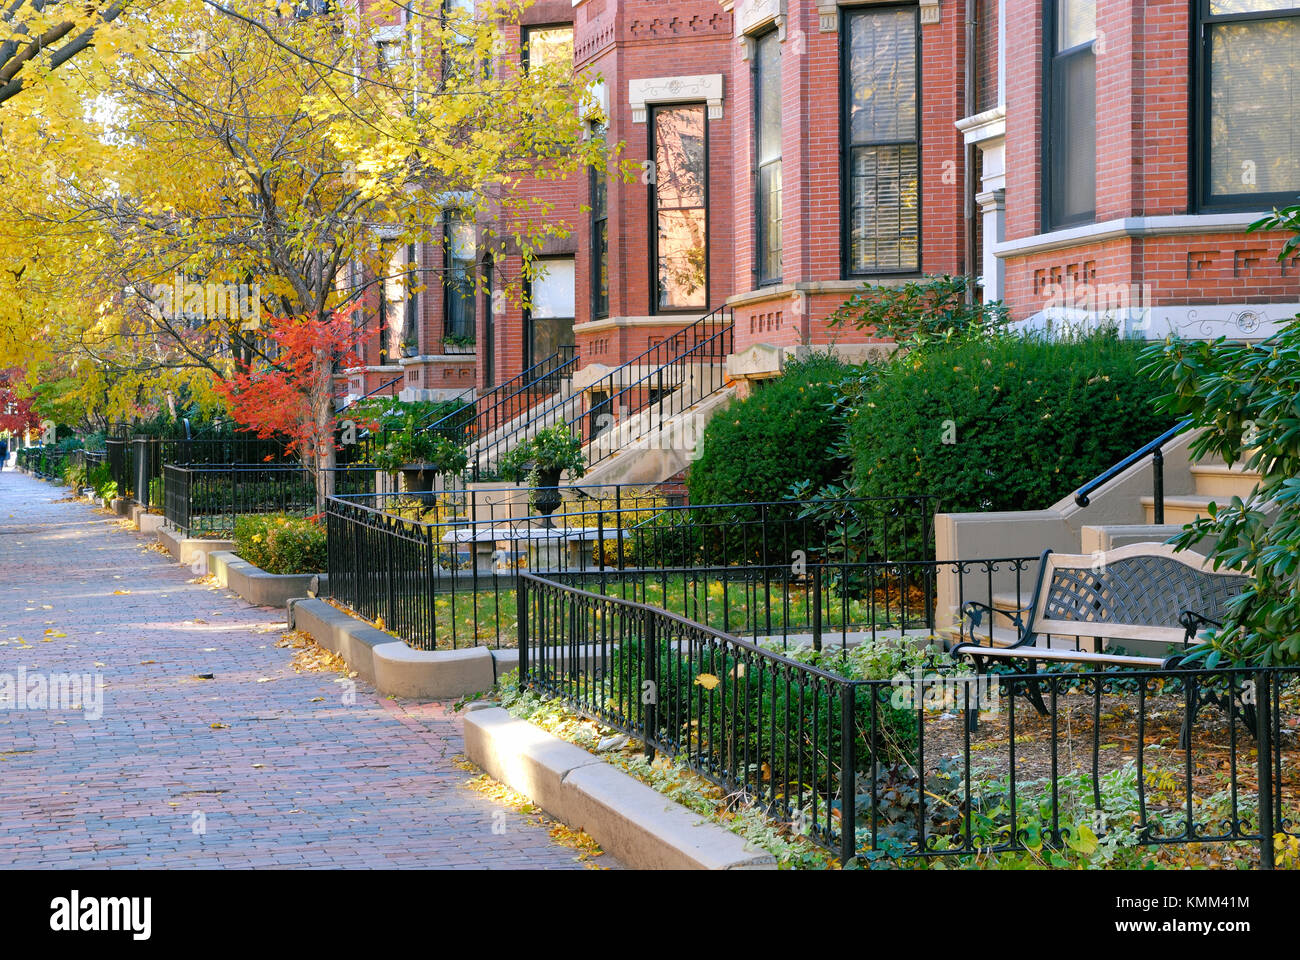 Aus rotem Backstein und Falllaub in schönen Back Bay, Boston. viktorianische Architektur, Herbst Straßenbild. Stockfoto